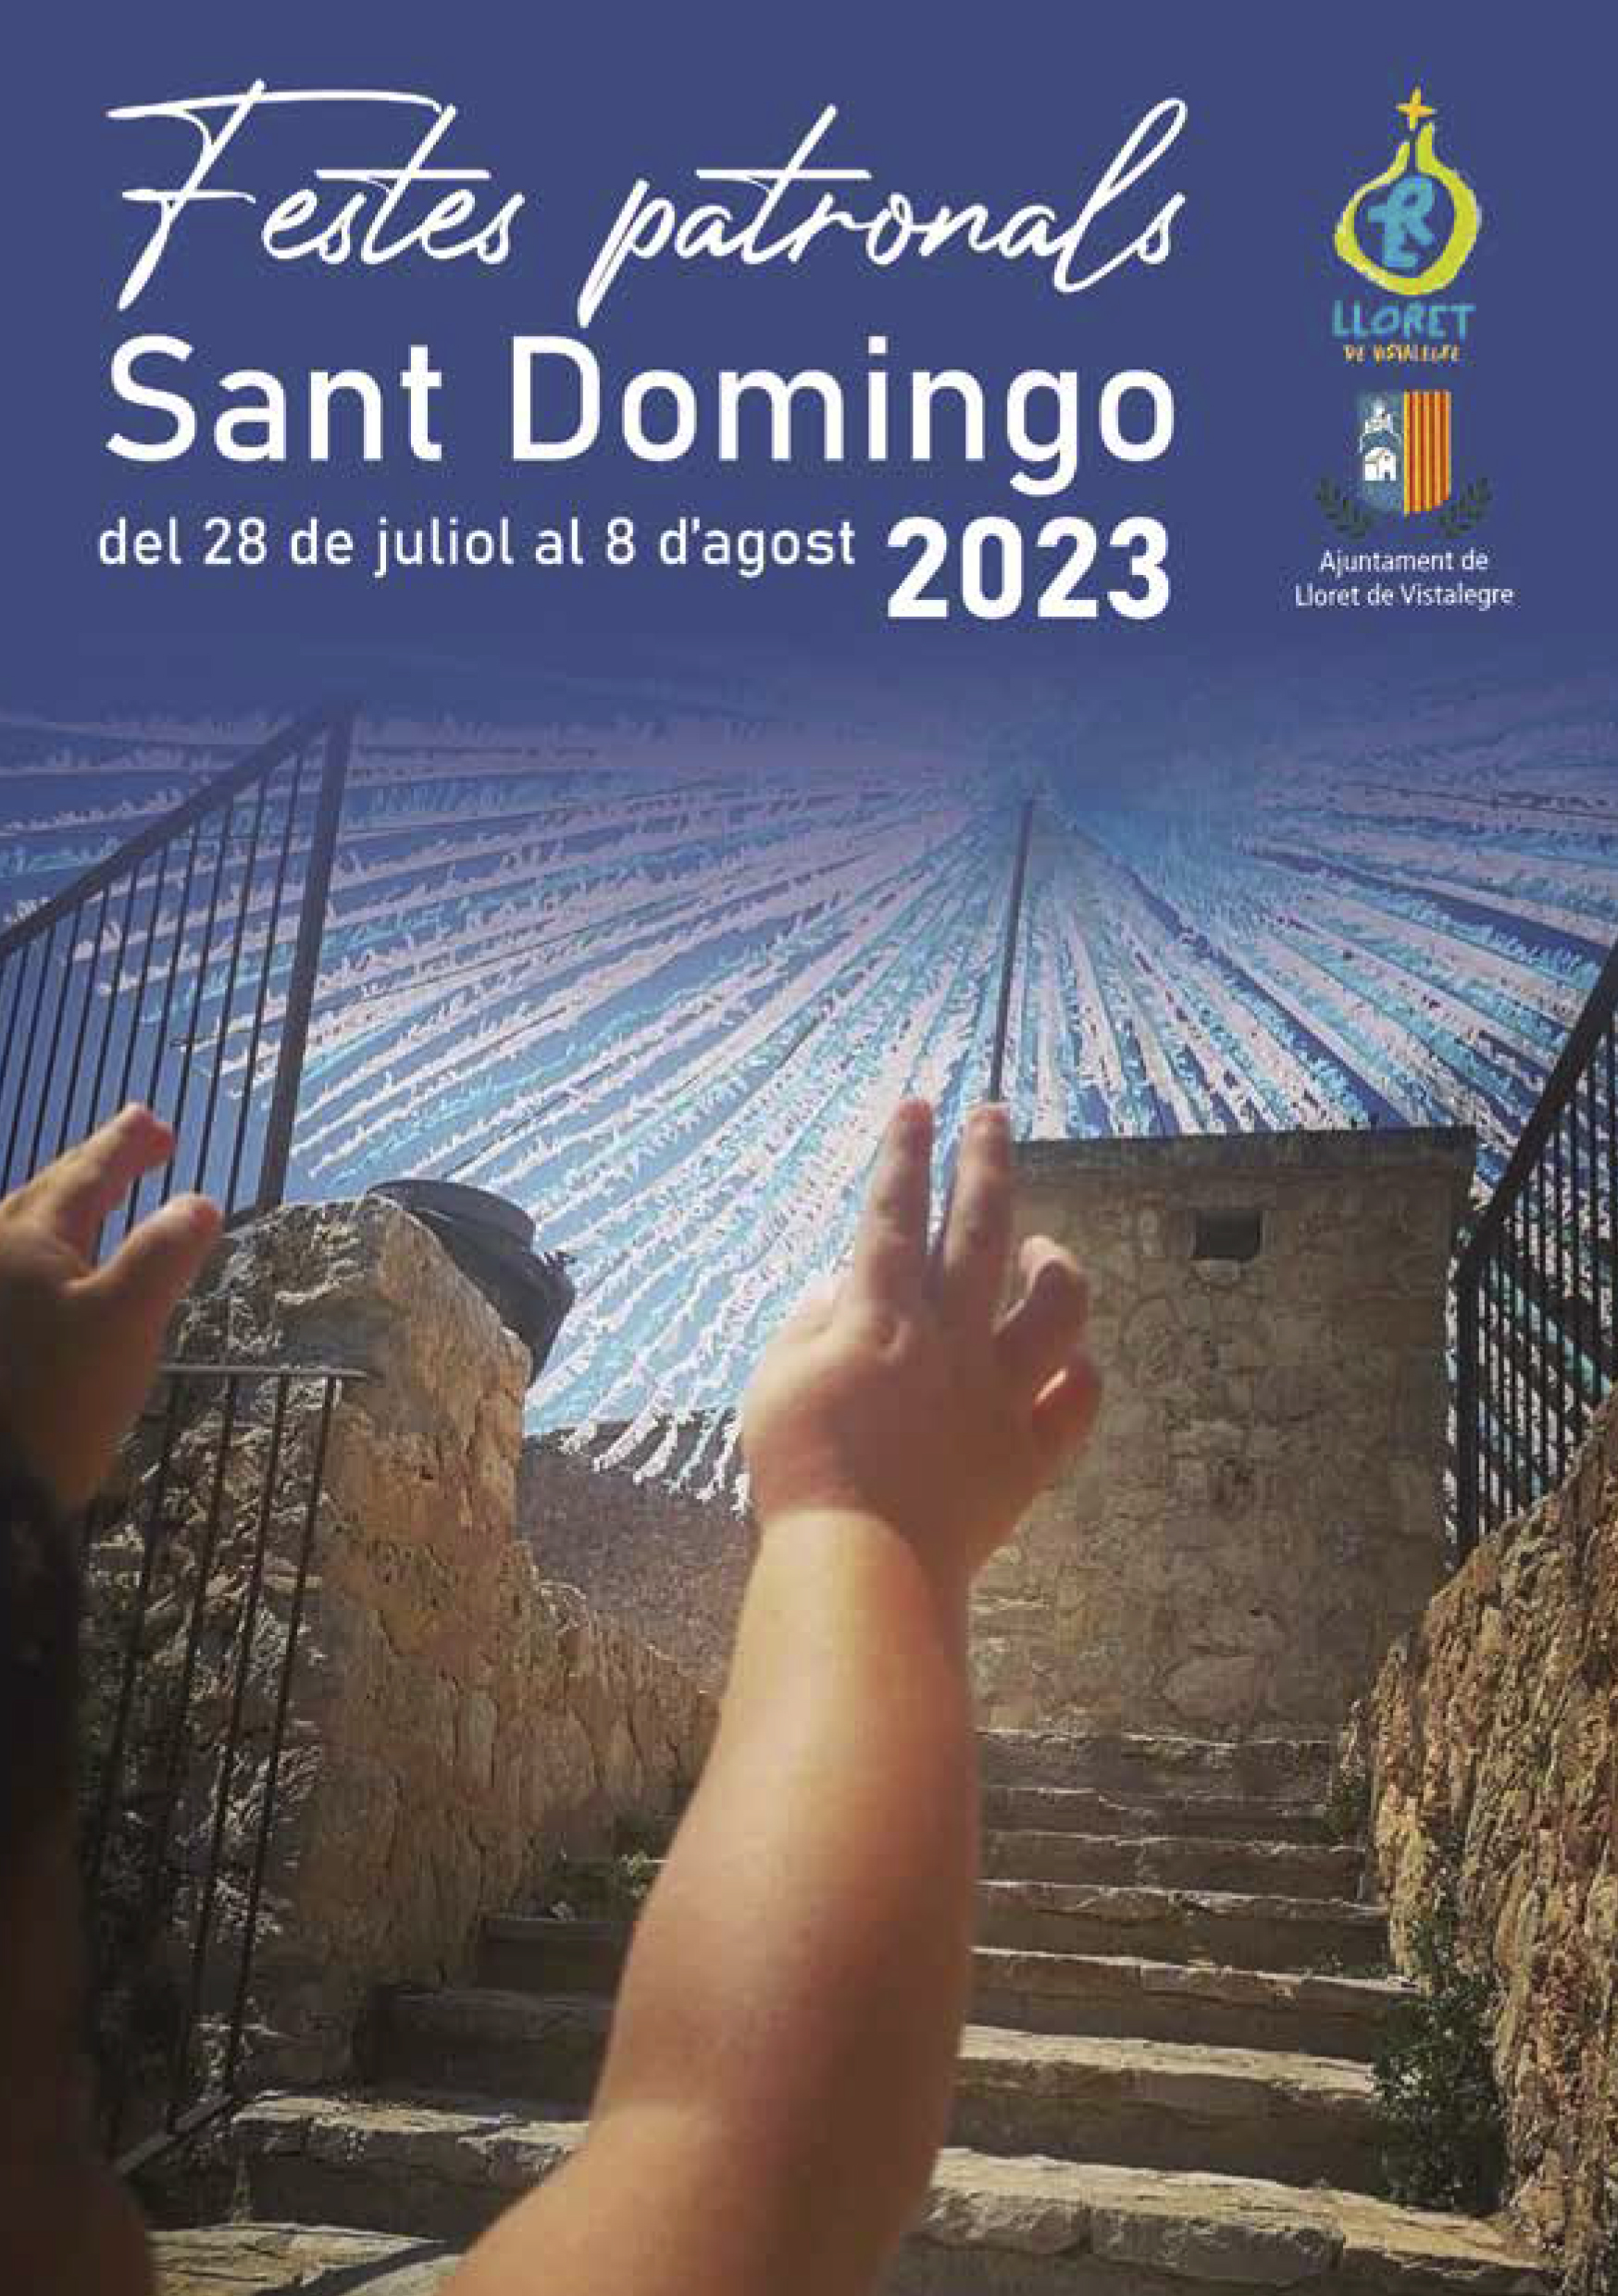 Sant Domingo 2023